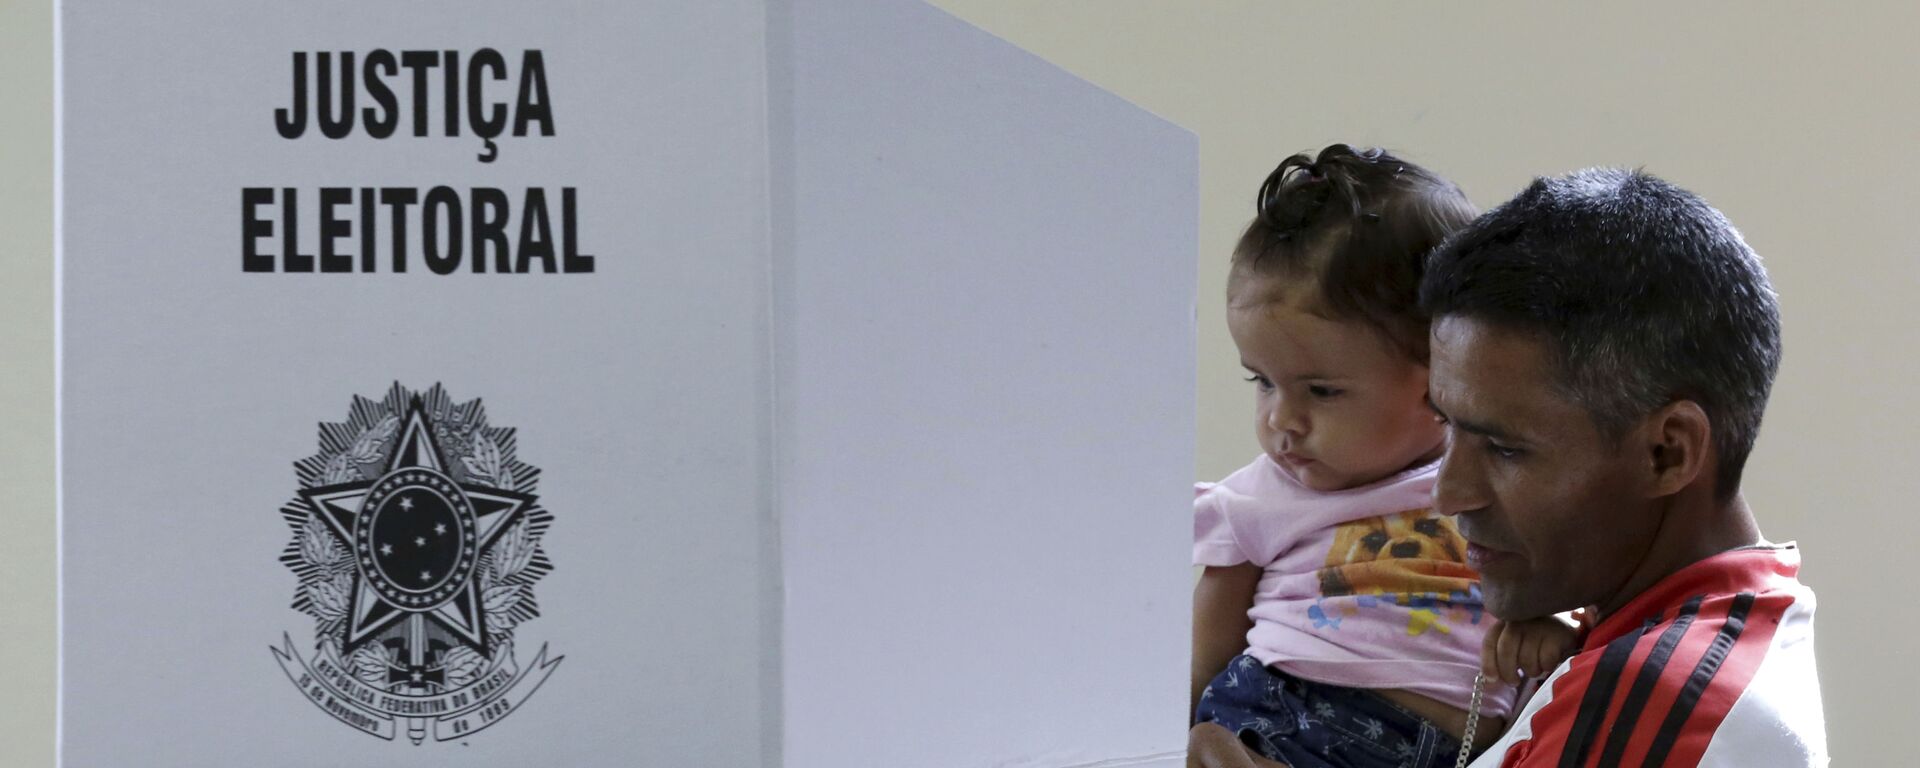 Eleitor com criança no colo chega a uma cabine eleitoral para registrar seu voto (foto de arquivo) - Sputnik Brasil, 1920, 09.06.2022